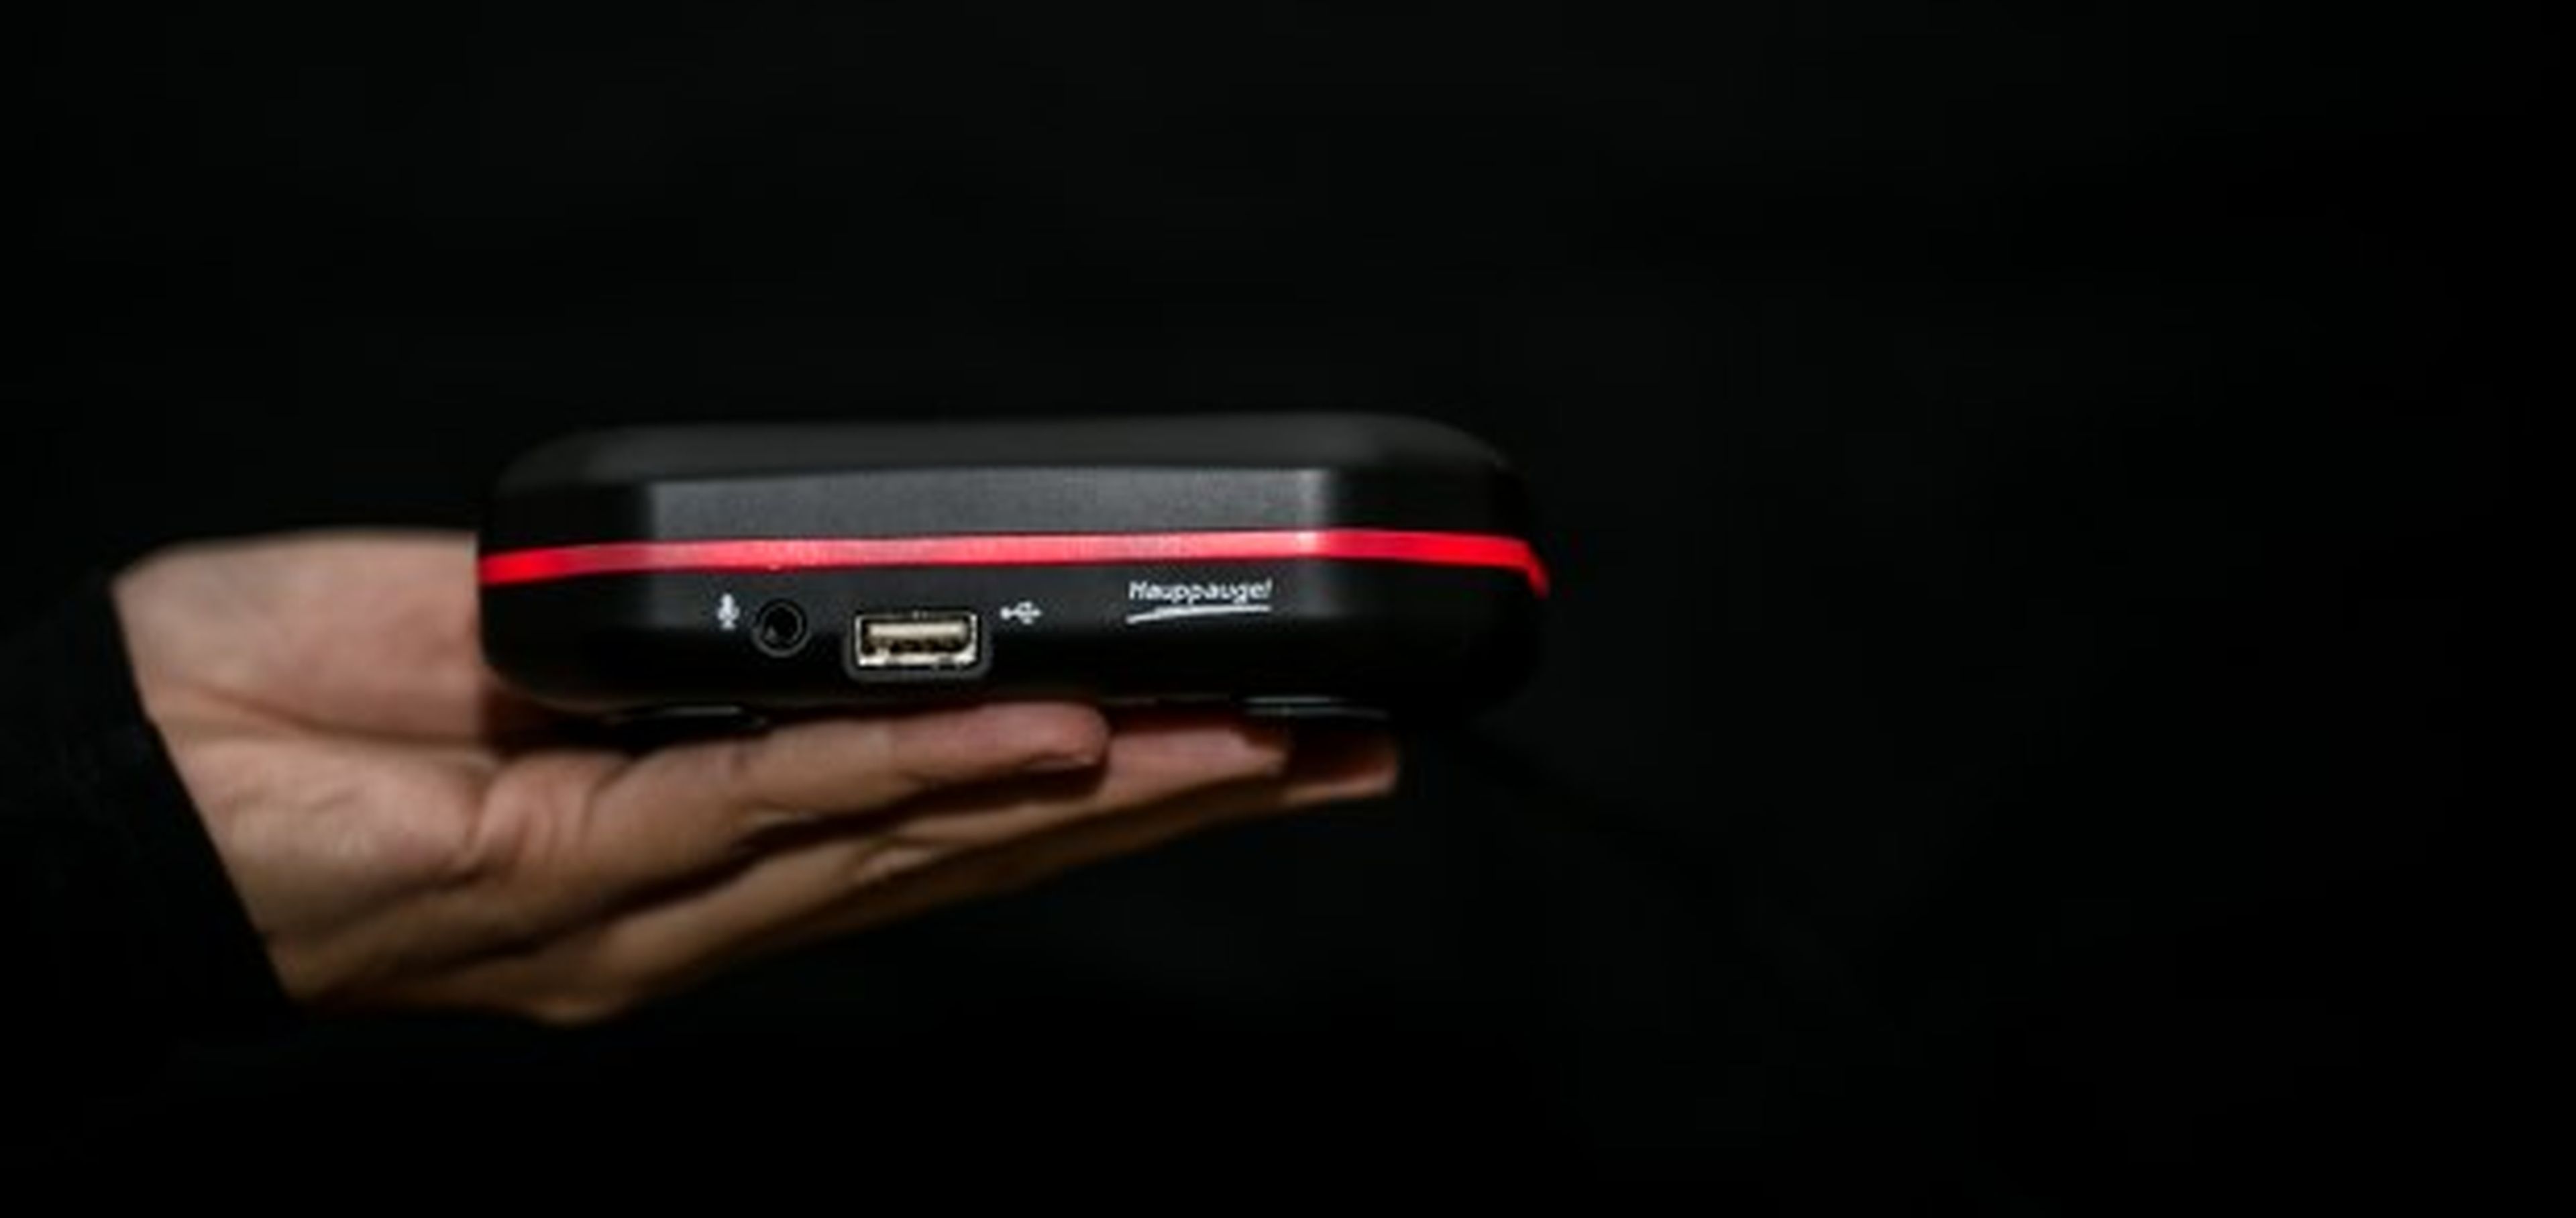 Hauppauge! lanza un grabador portátil pensado para gamers